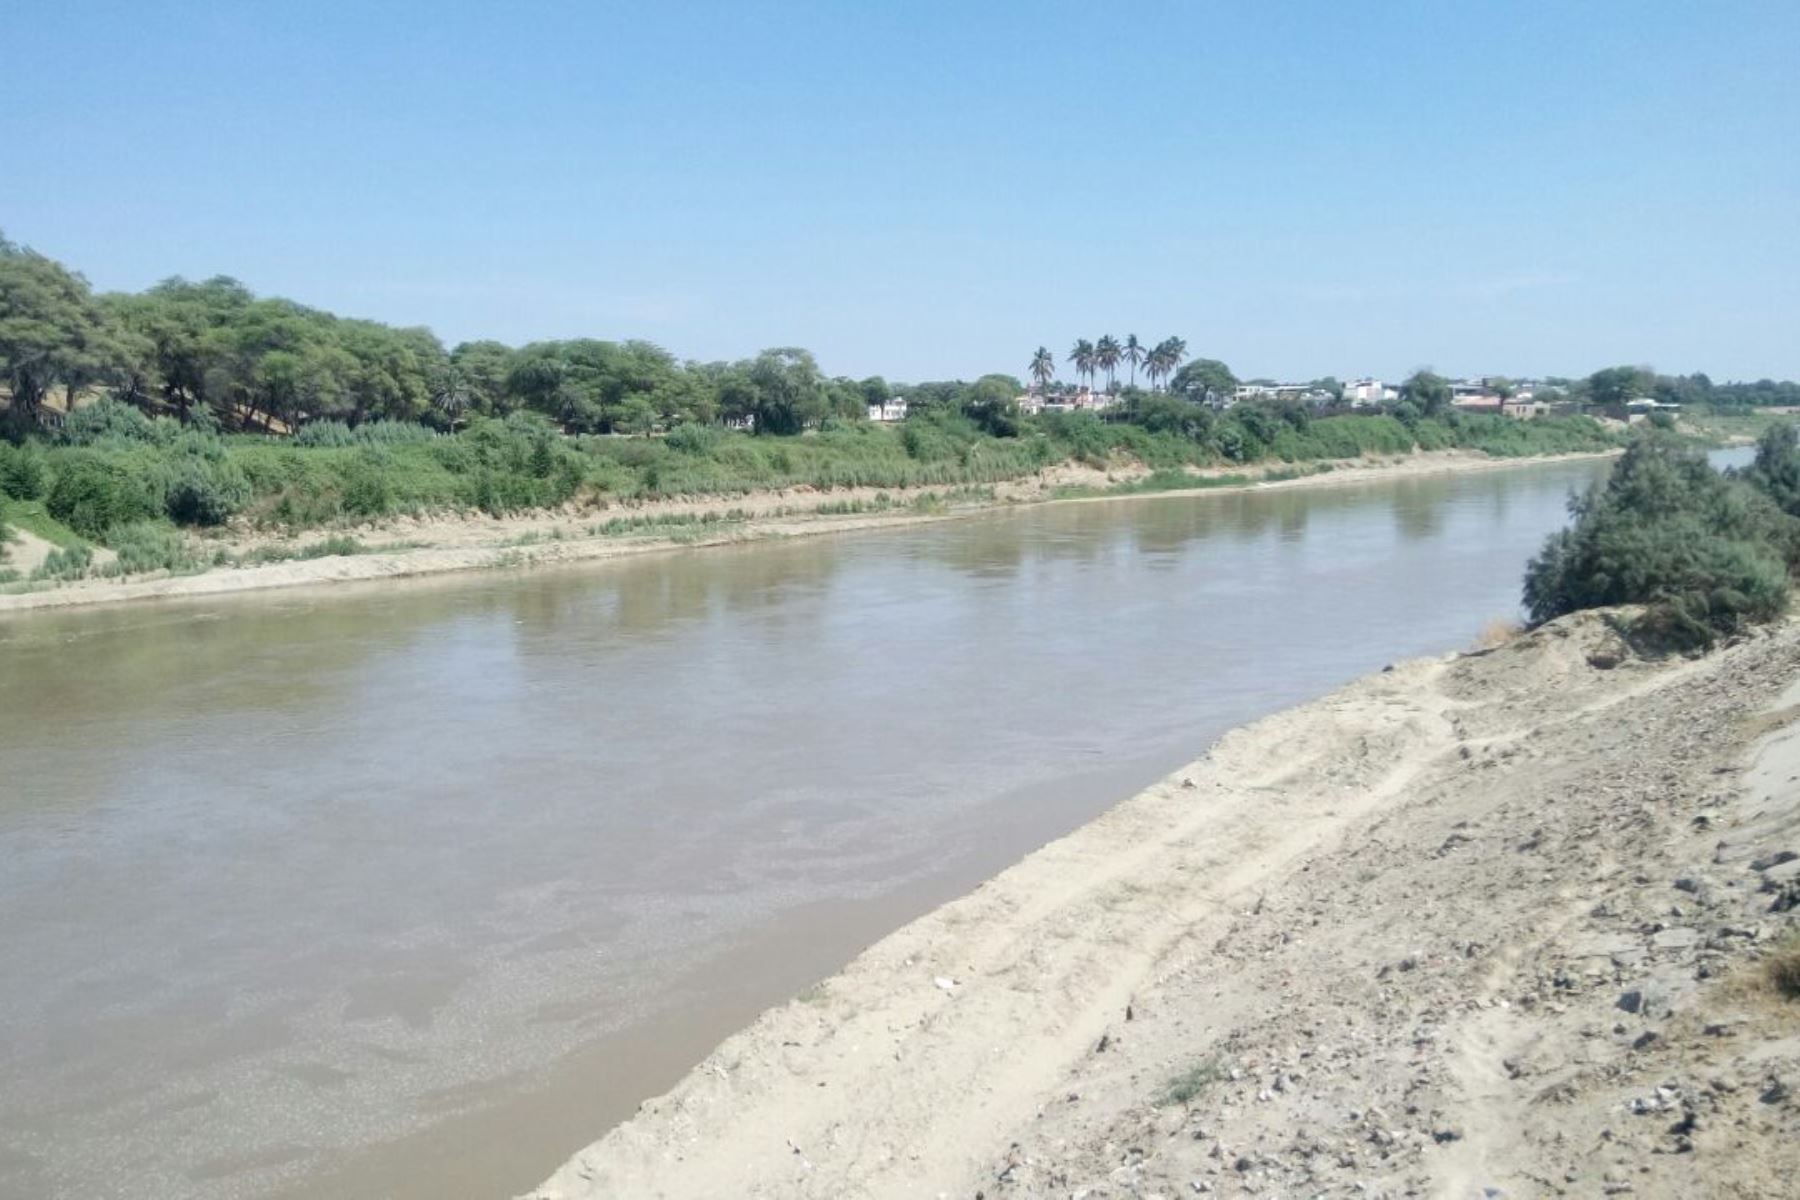 El Servicio Nacional de Meteorología e Hidrología (Senamhi) declaró hoy la alerta hidrológica naranja en el río Pisco debido al incremento de su caudal y nivel de agua, debido a las intensas y persistentes lluvias en su cuenca media y alta. ANDINA/Difusión